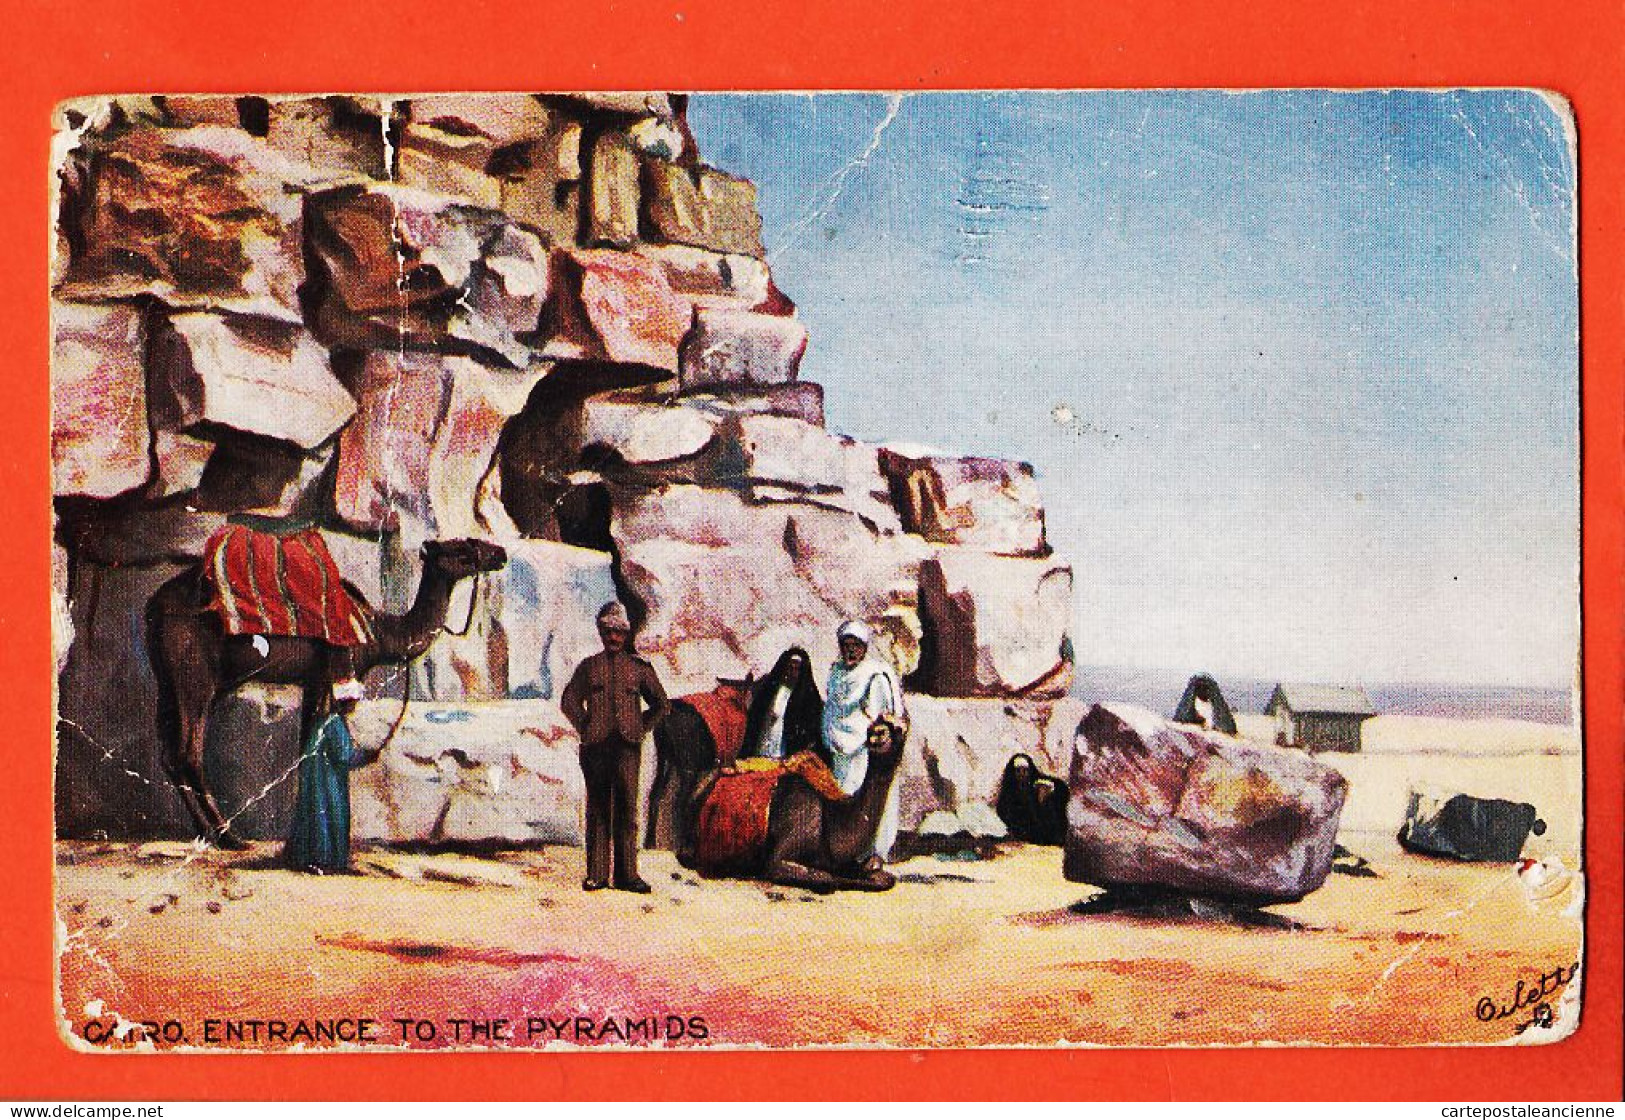 08045 ● CAIRO Entrance To The Pyramids Le CAIRE Entrée Pyramides 27-02-1911 à Suzanne LAMBA Raphael TUCK OILETTE - Pyramiden